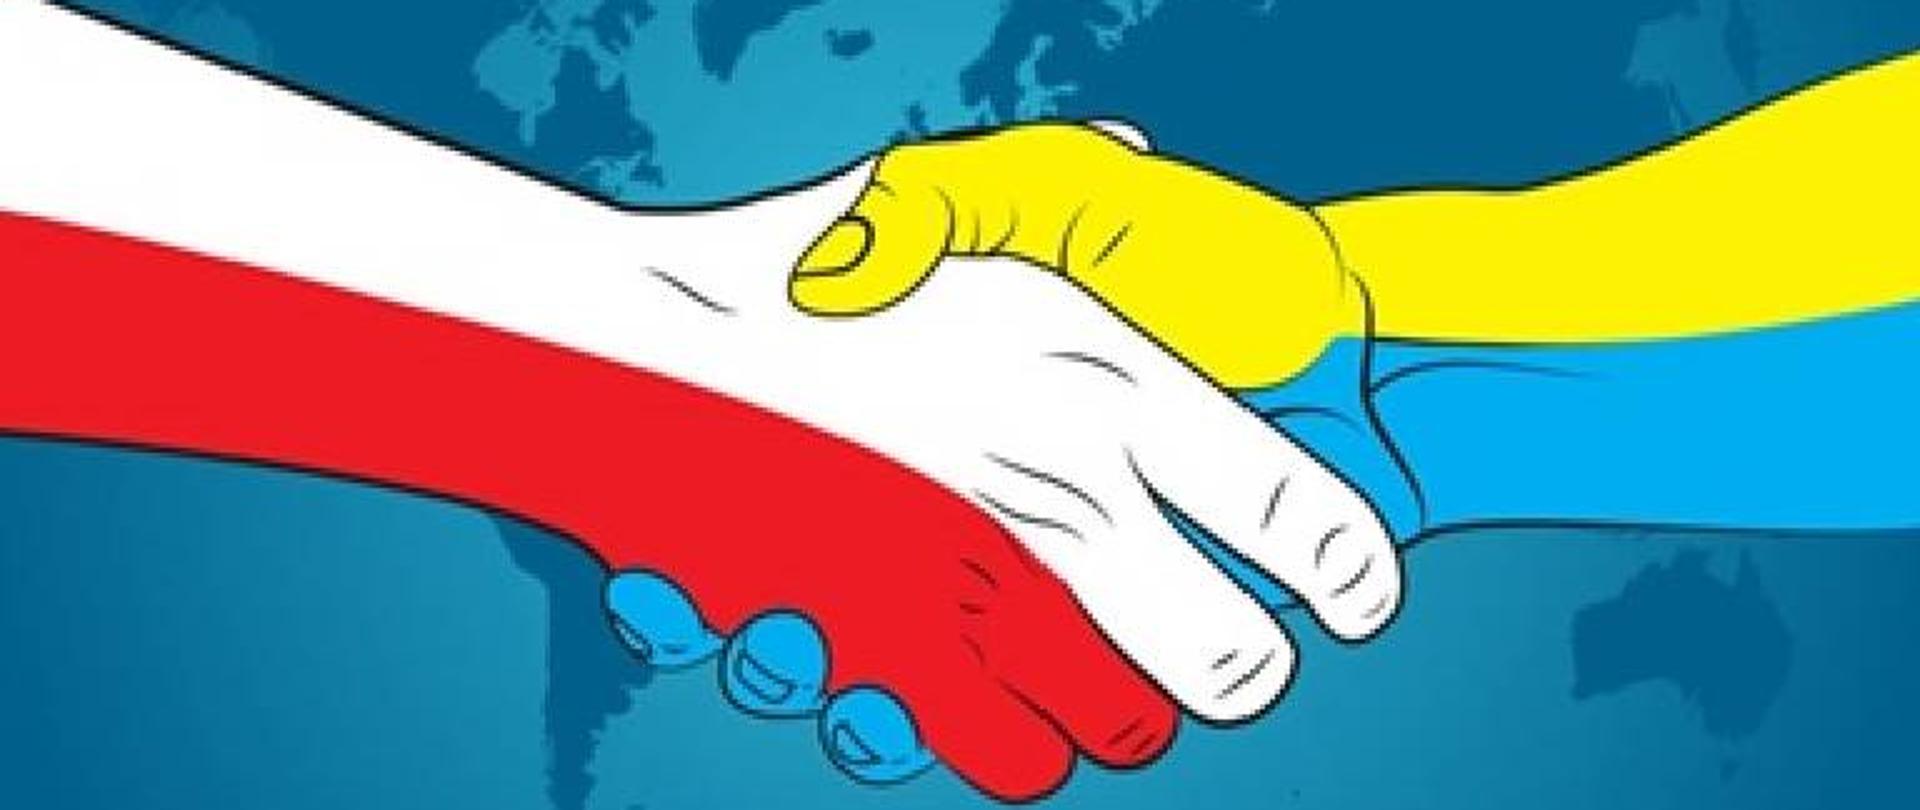 Zdjęcie przedstawia dwie ręce, które robią uścisk. Jedna ręka w kolorach flagi Polski a druga w kolorach flagi Ukrainy